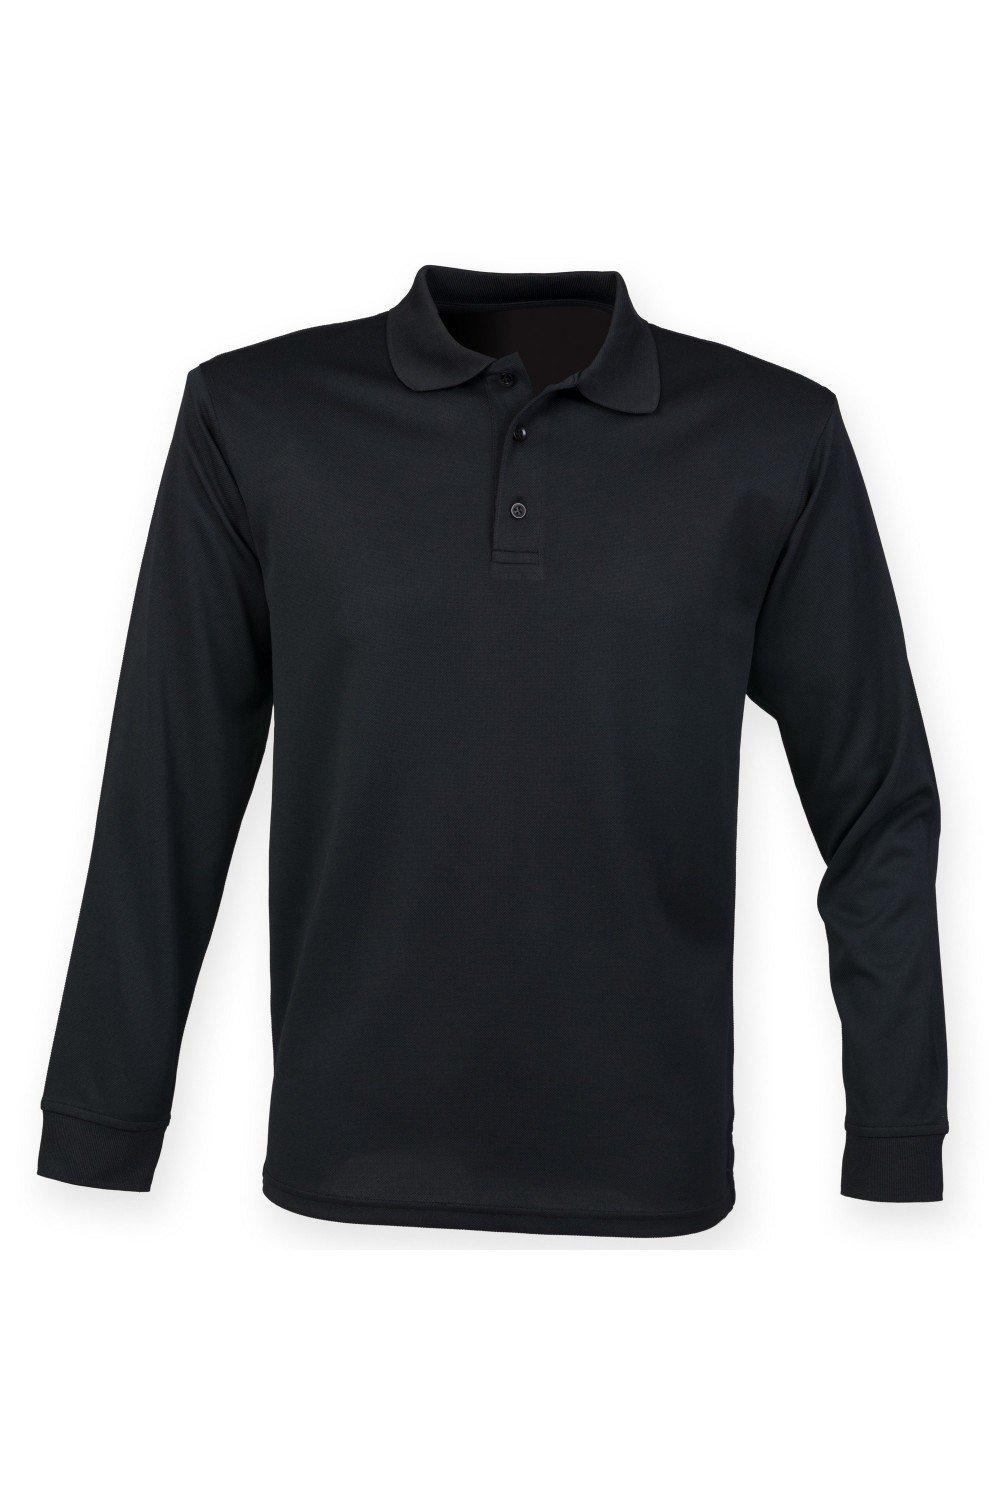 Влагоотводящая рубашка-поло с длинными рукавами Coolplus Henbury, черный рубашка поло coolplus из пике henbury черный